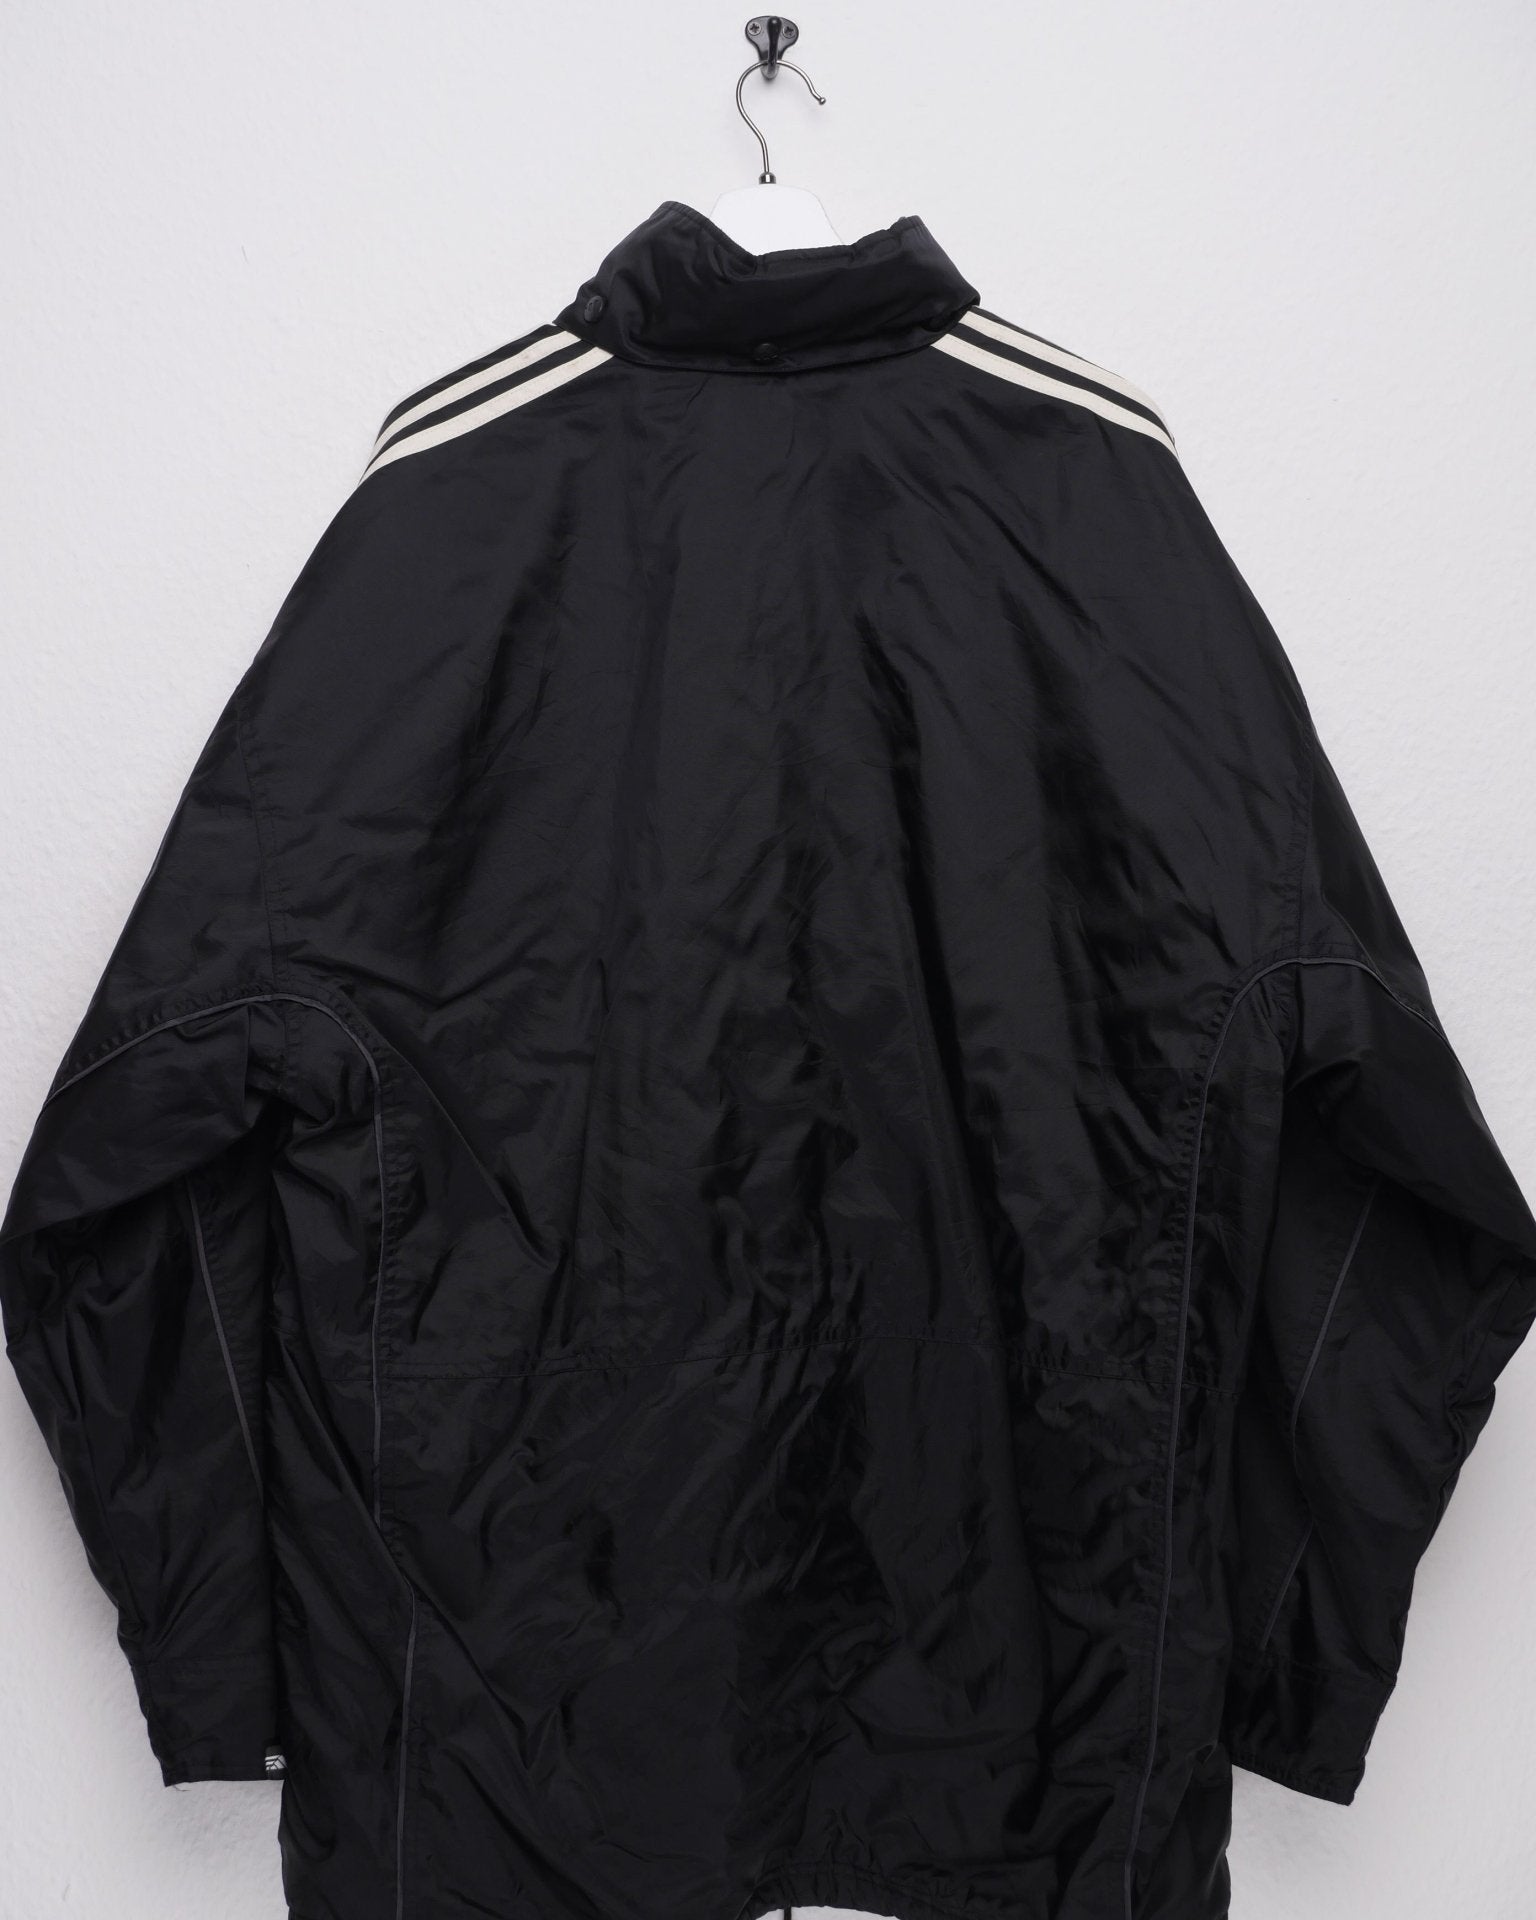 adidas embroidered Logo 'F.C. Fontaine' black oversized Jacke - Peeces